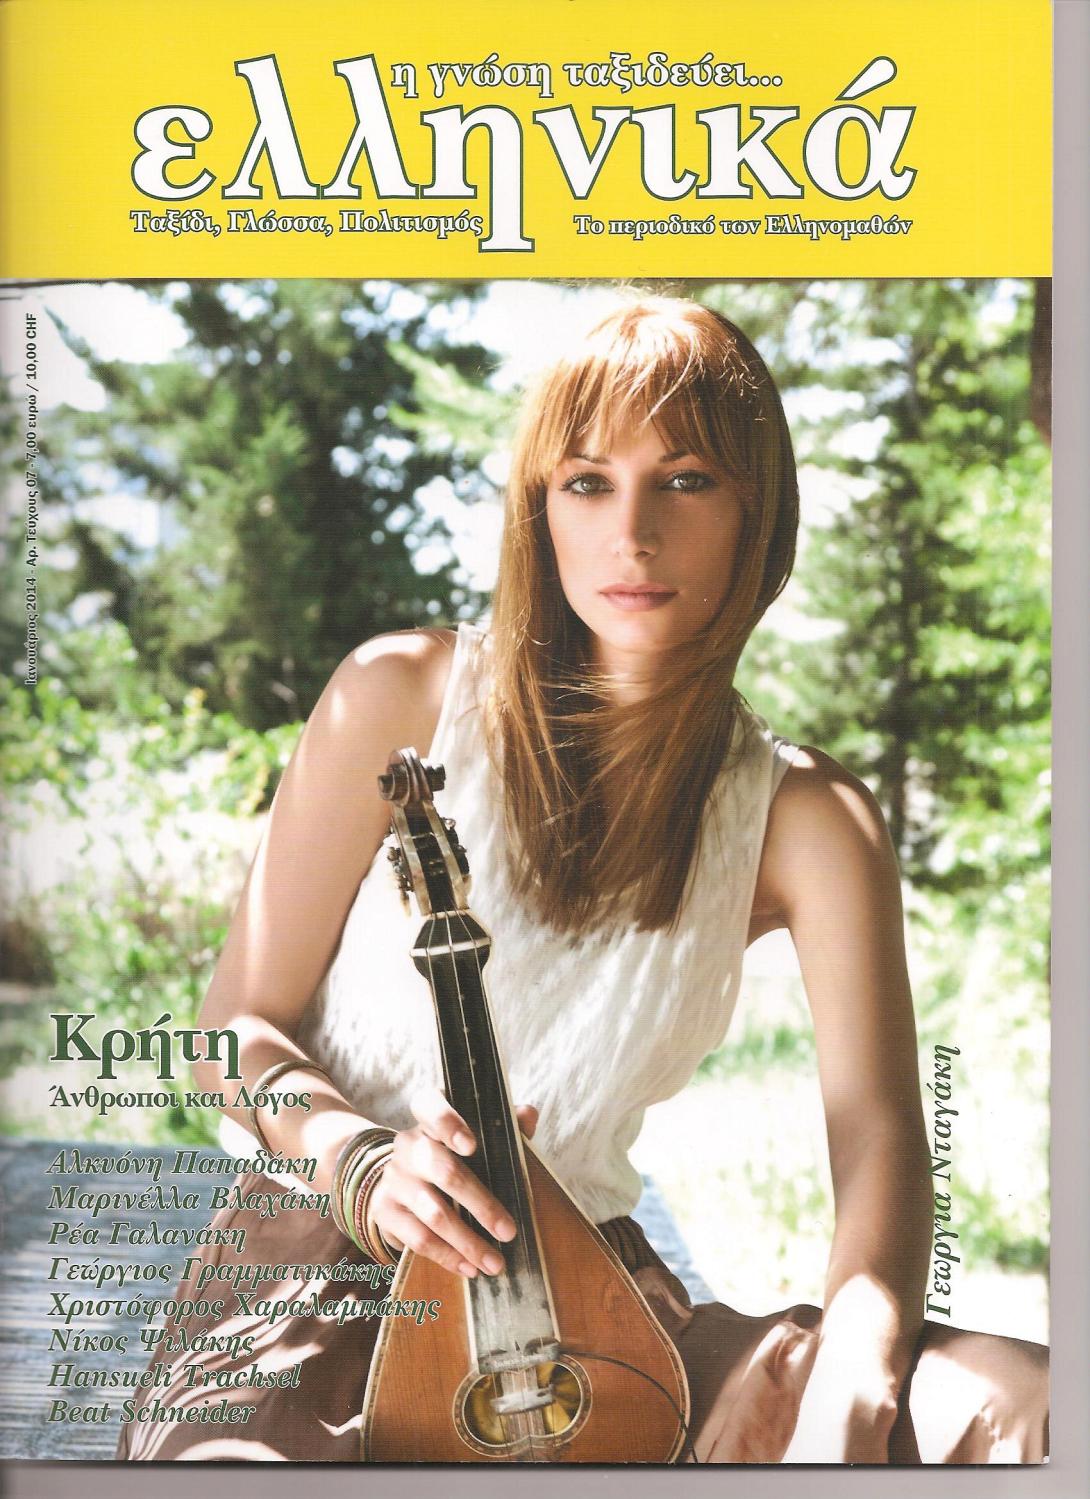 Ελληνικό περιοδικό στην Ελβετία, με αφιέρωμα στην Κρήτη !!